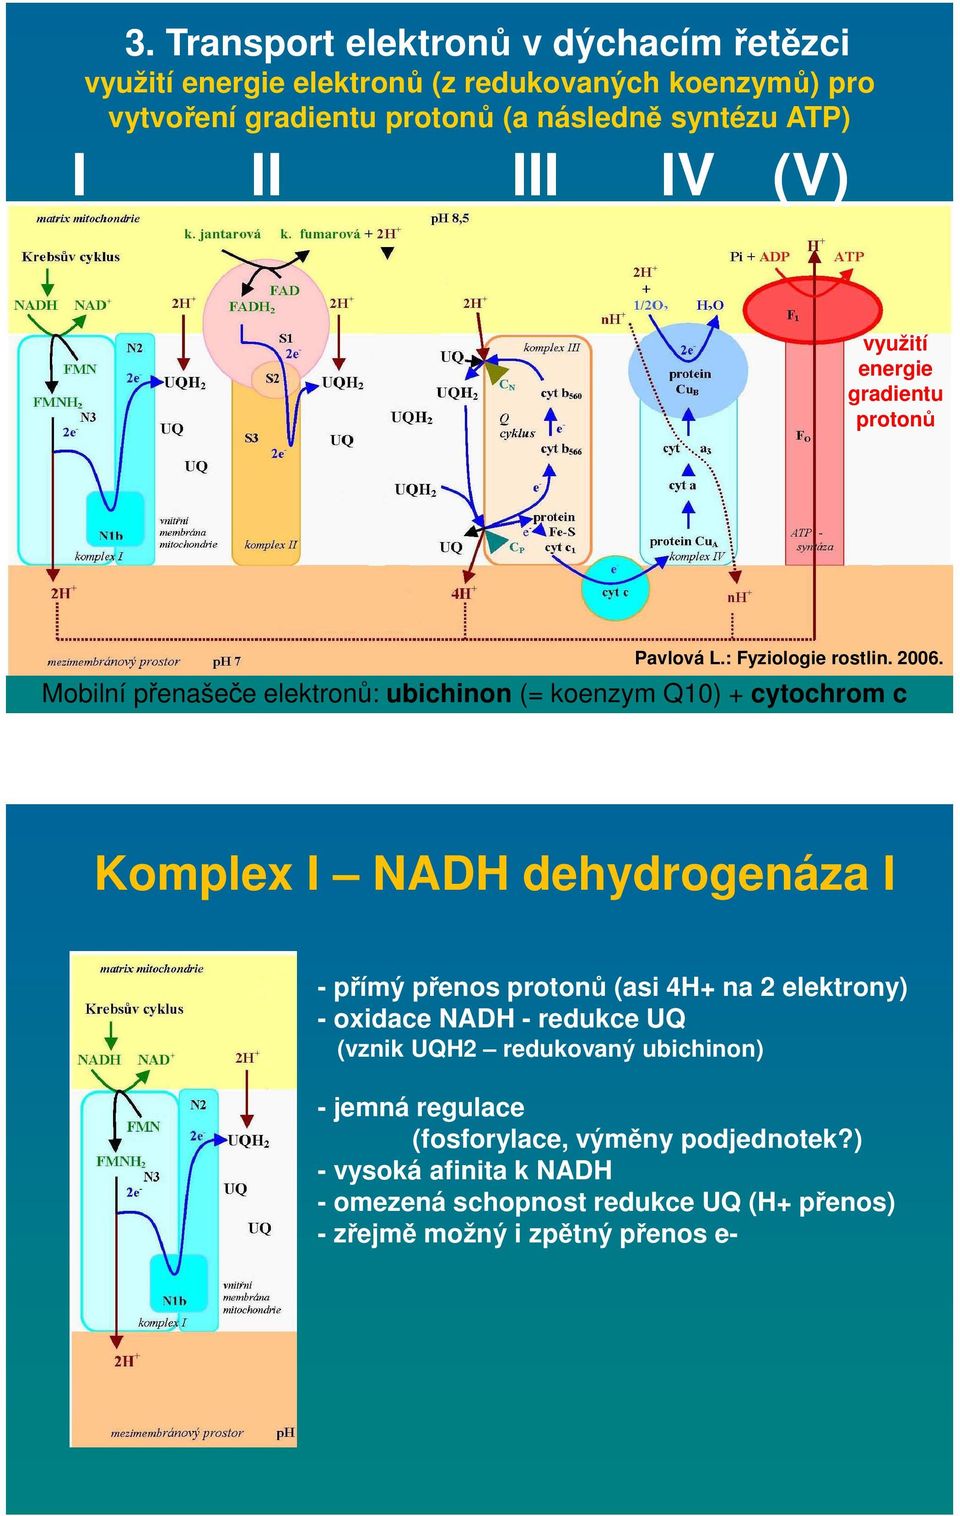 Mobilní přenašeče elektronů: ubichinon (= koenzym Q10) + cytochrom c Komplex I NADH dehydrogenáza I - přímý přenos protonů (asi 4H+ na 2 elektrony) -